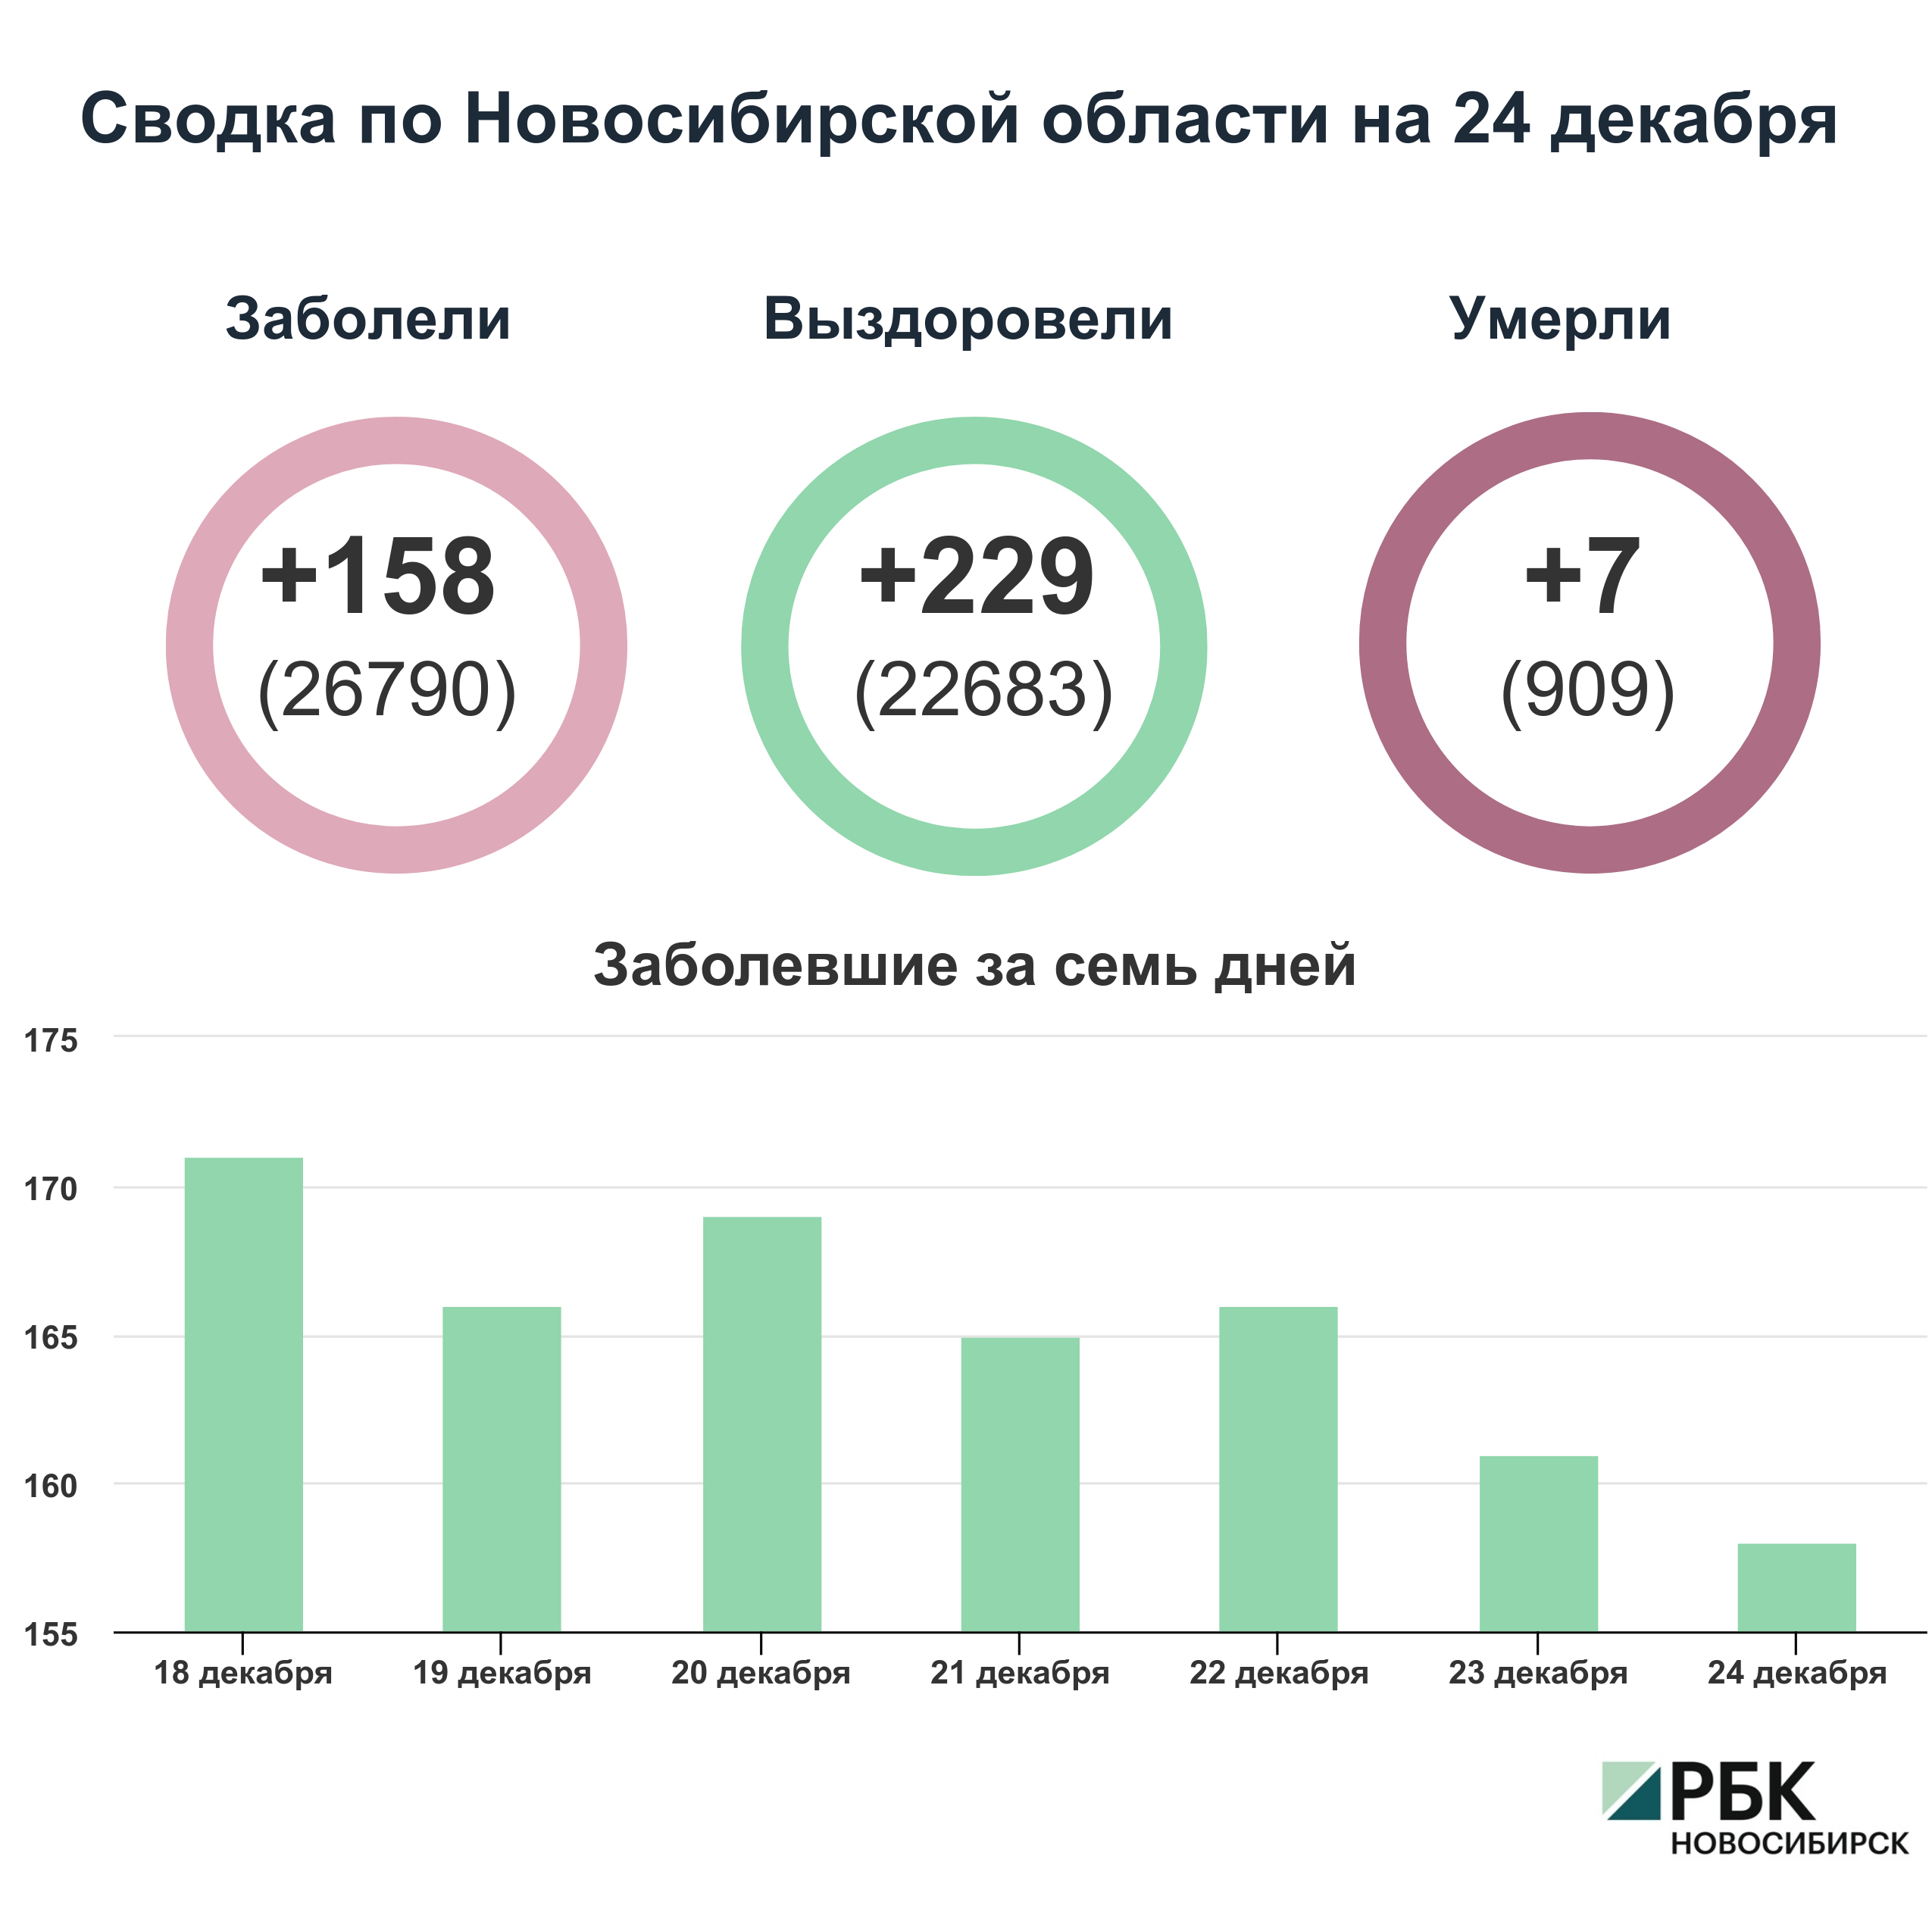 Коронавирус в Новосибирске: сводка на 24 декабря